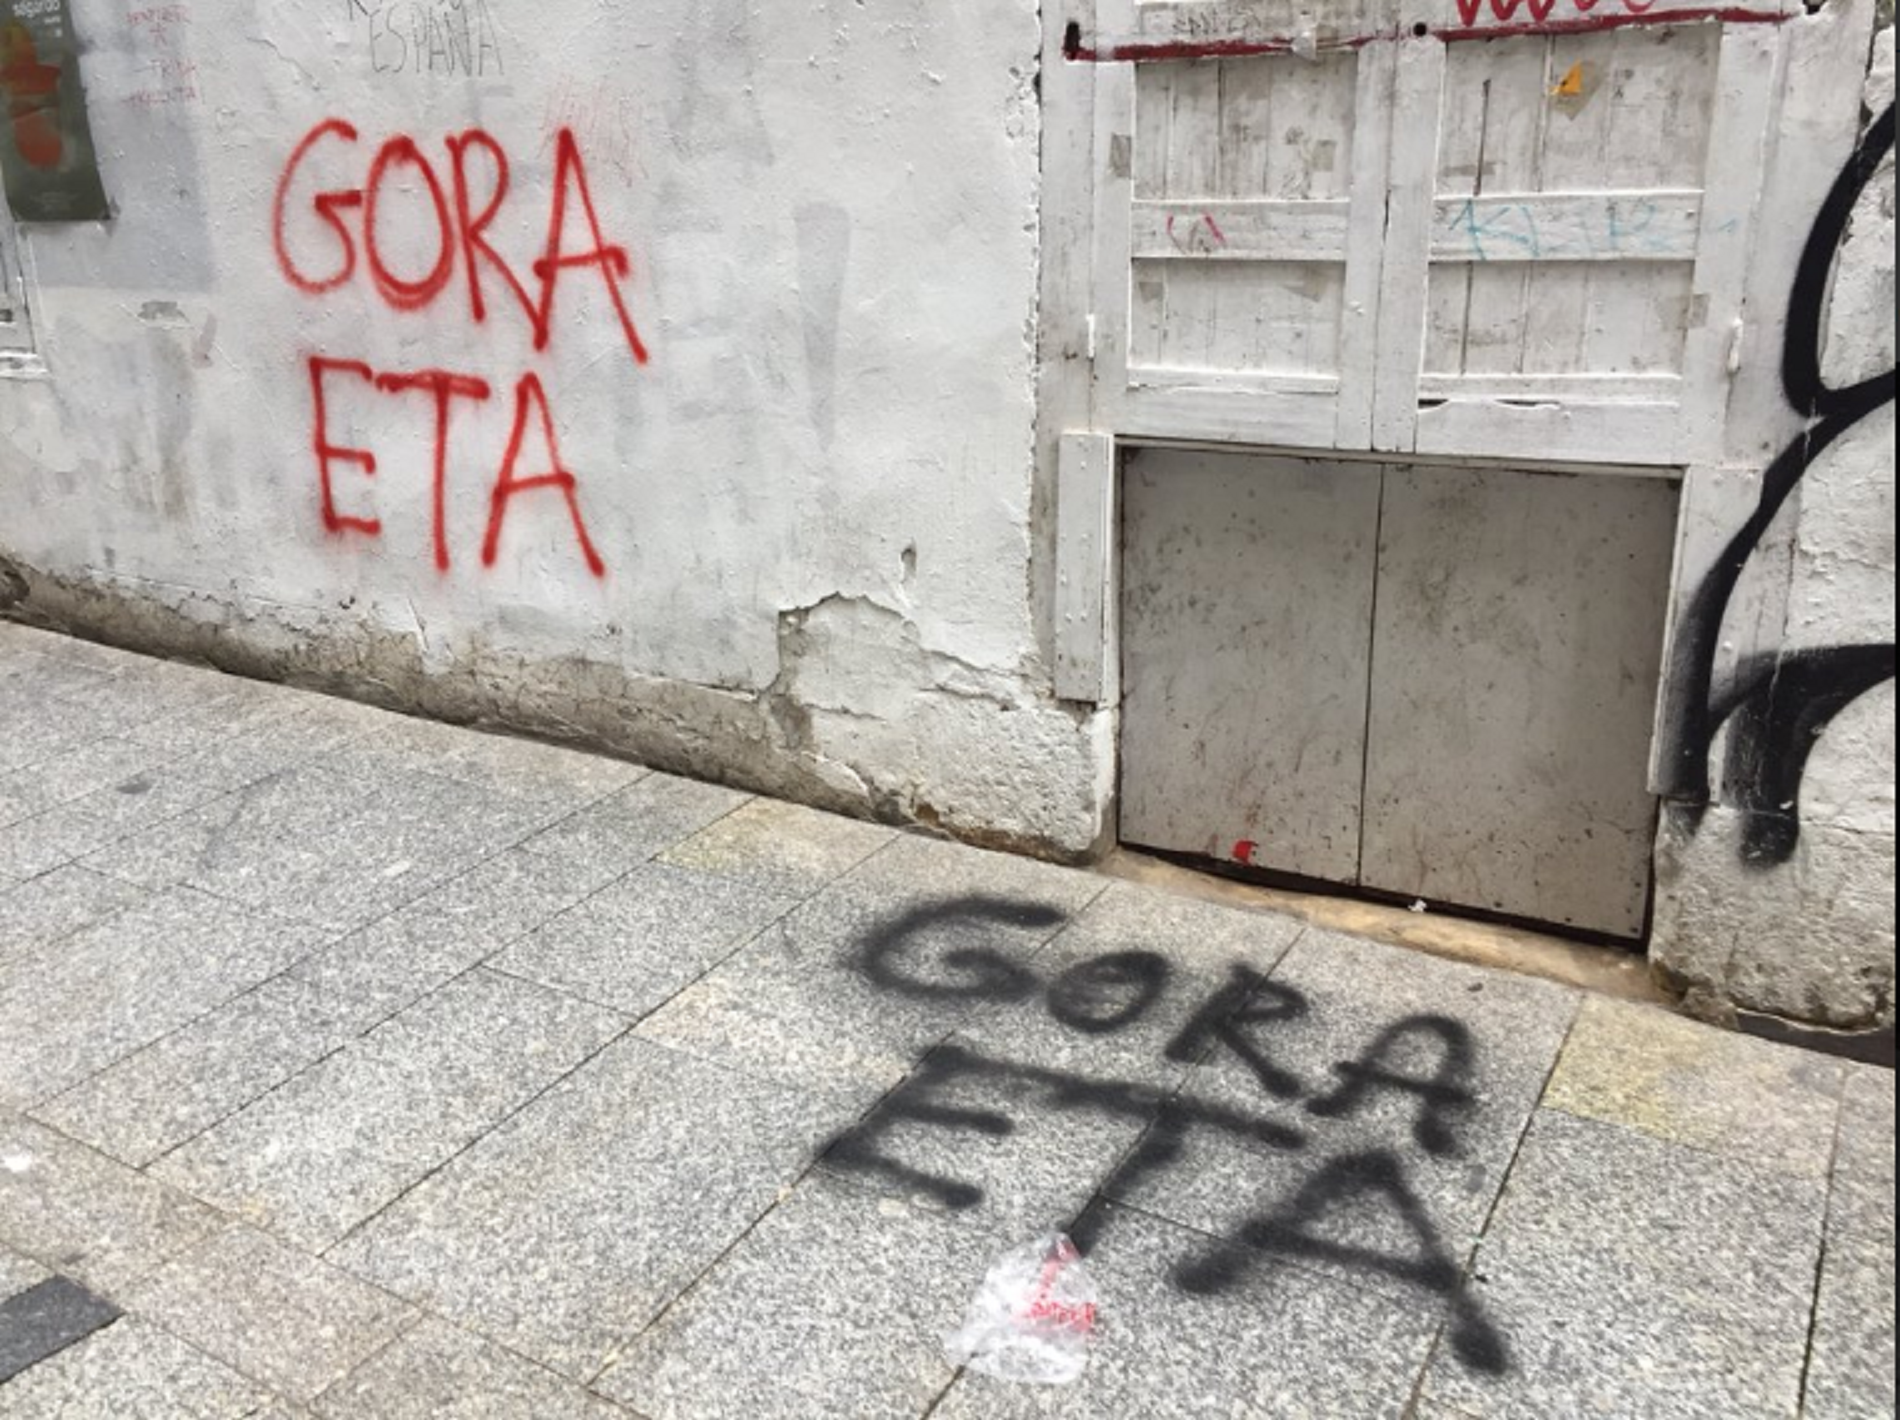 Desenes de pintades de "Gora ETA" inunden els carrers d'Hernani